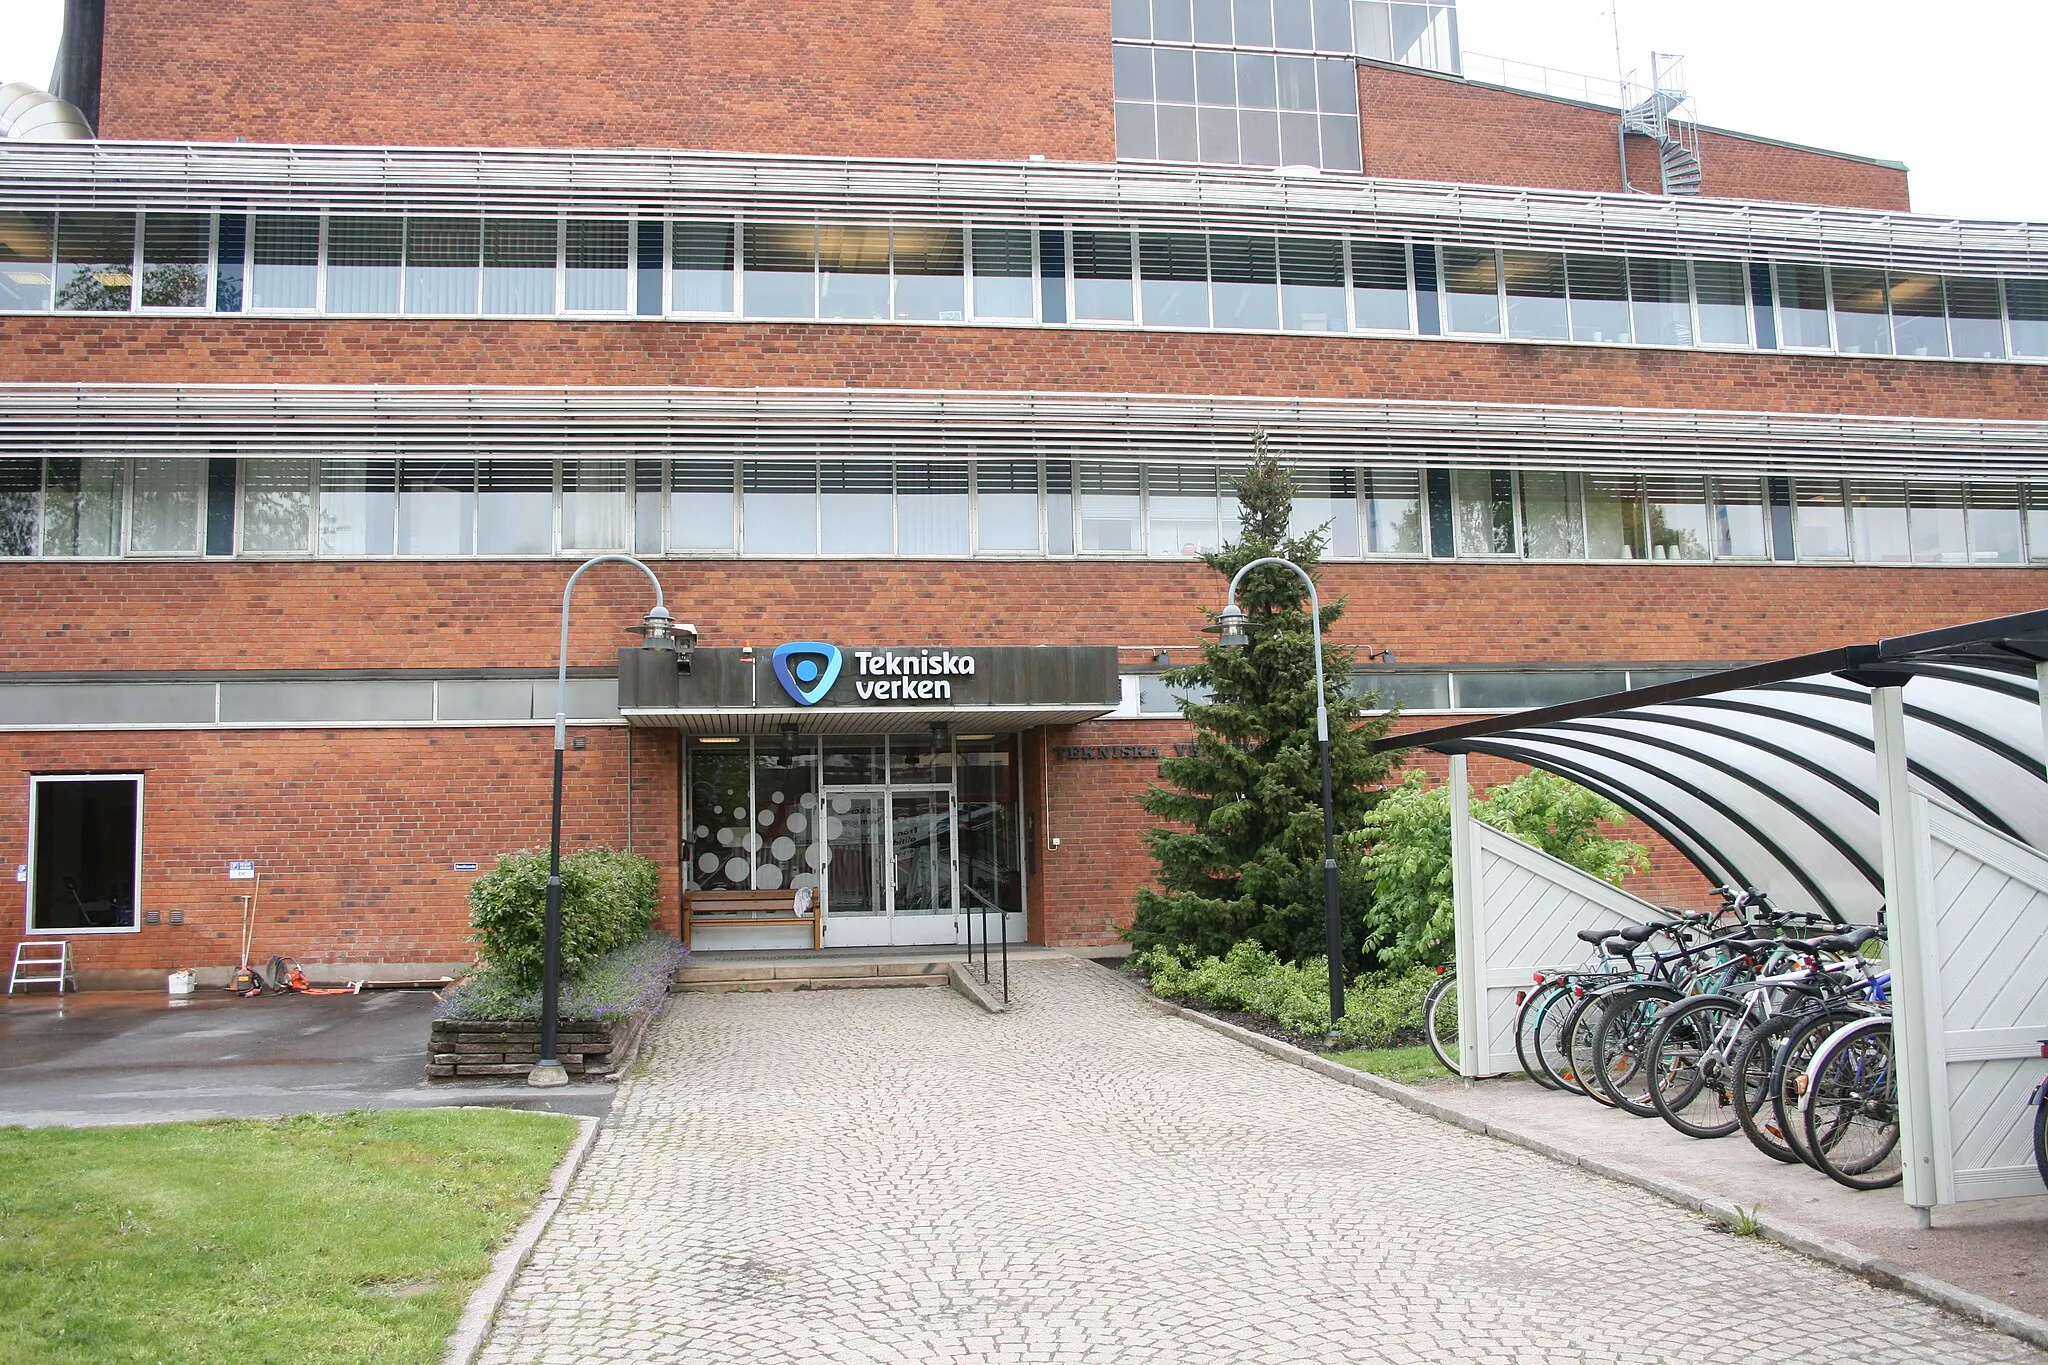 Photo showing: Kraftvärmeverket, Linköping, tillhörande Tekniska Verken, ett kommunalt bolag. Beläget vid Södra Oskarsgatan, norr om Centralstationen.